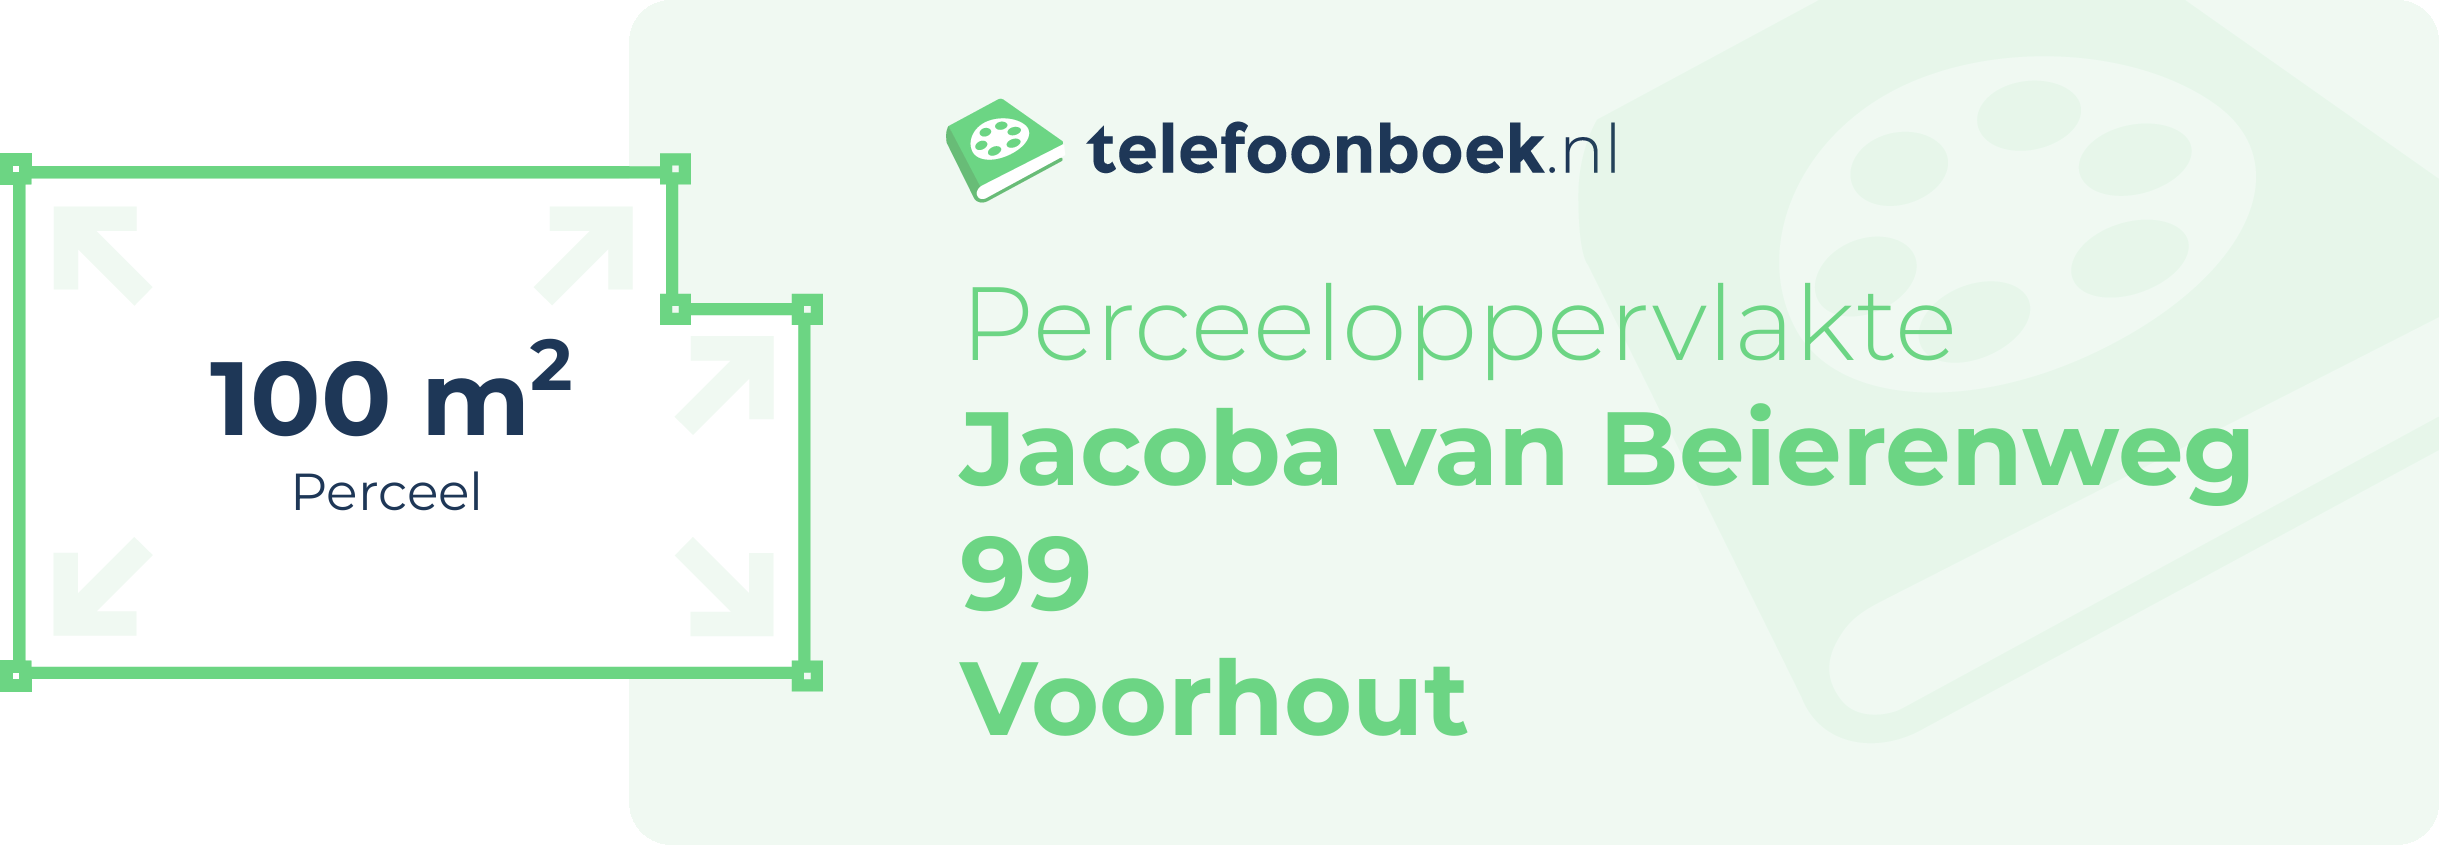 Perceeloppervlakte Jacoba Van Beierenweg 99 Voorhout